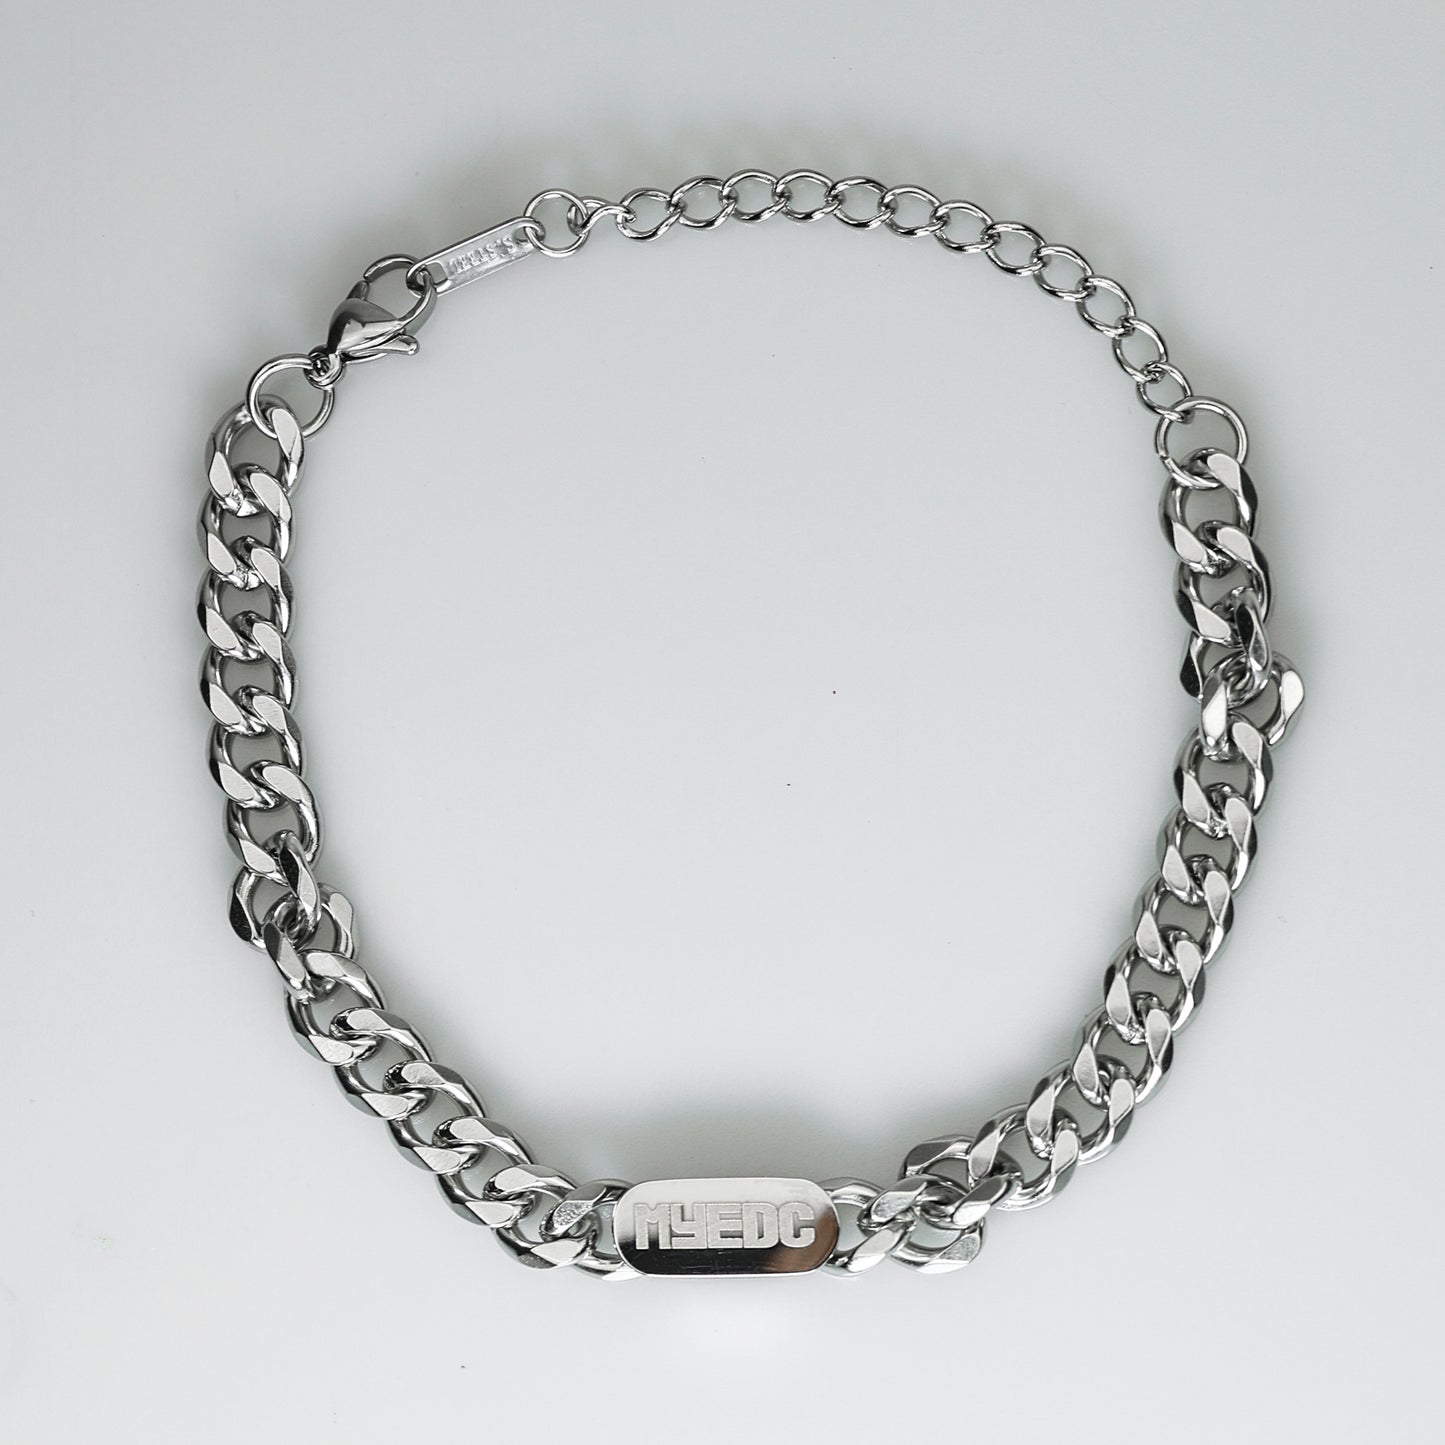 MYEDC Sturdy Stainless Steel Bracelets